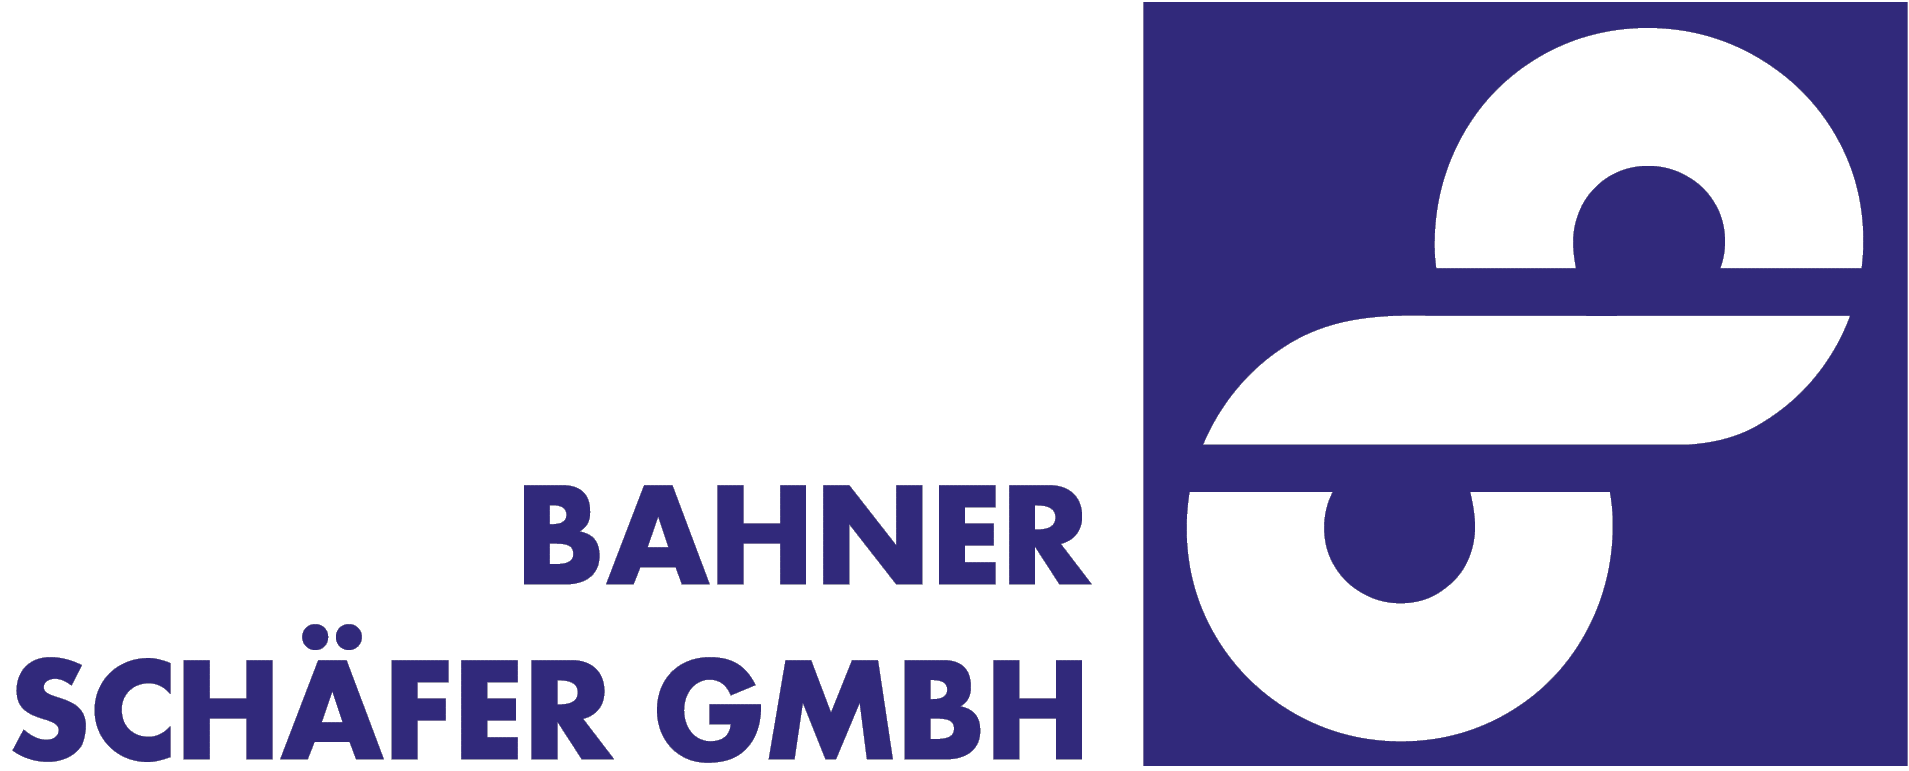 Bahner Schäfer GmbH